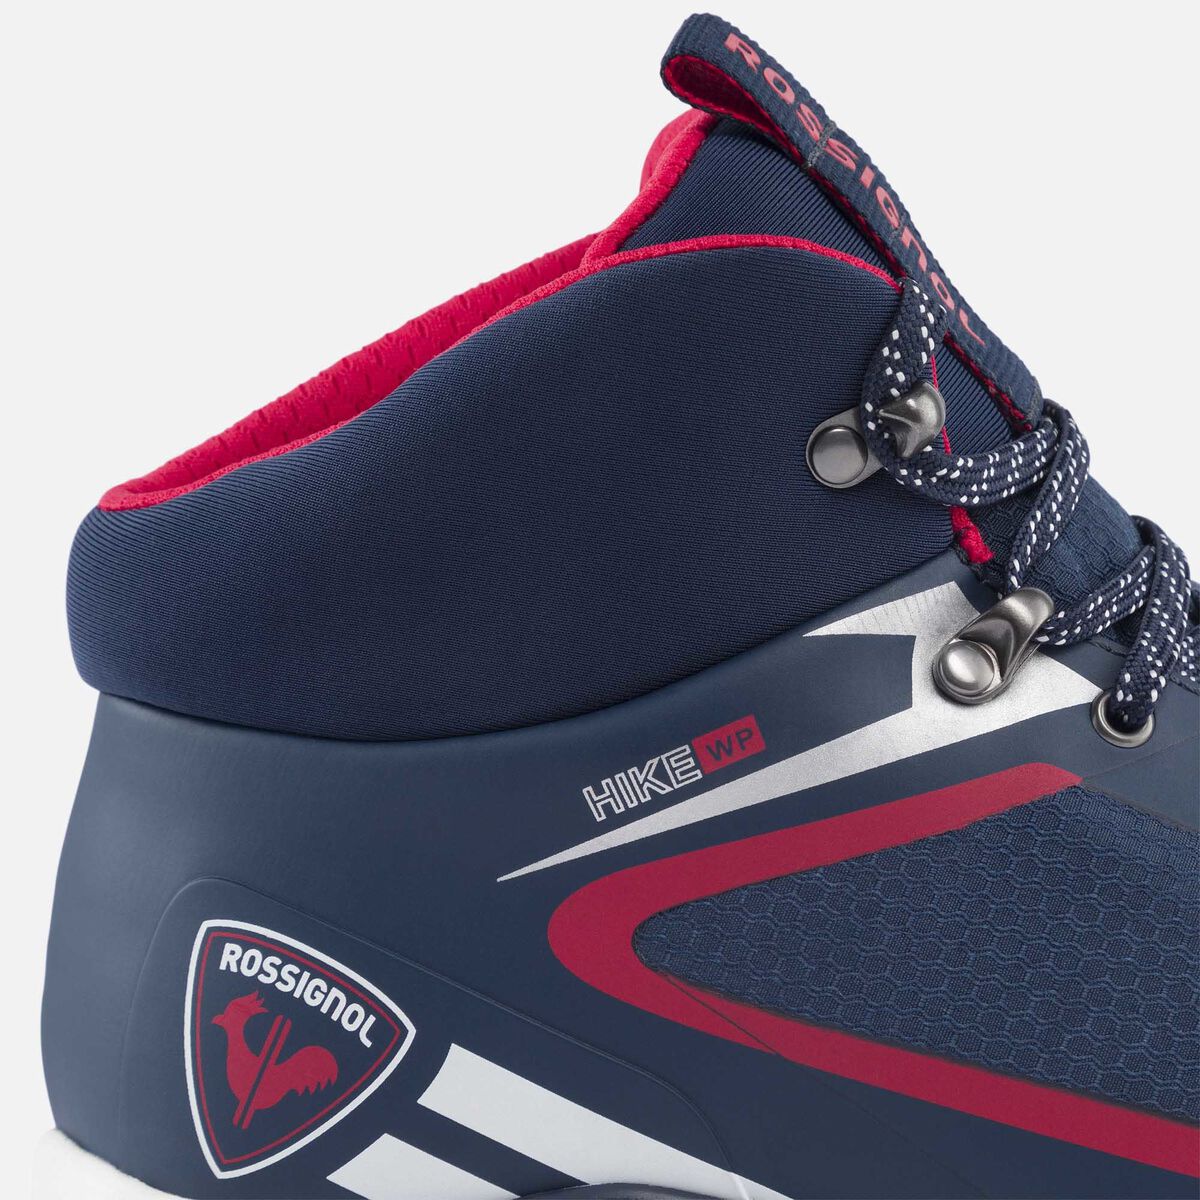 Rossignol Men's navy waterproof hiking shoes blue